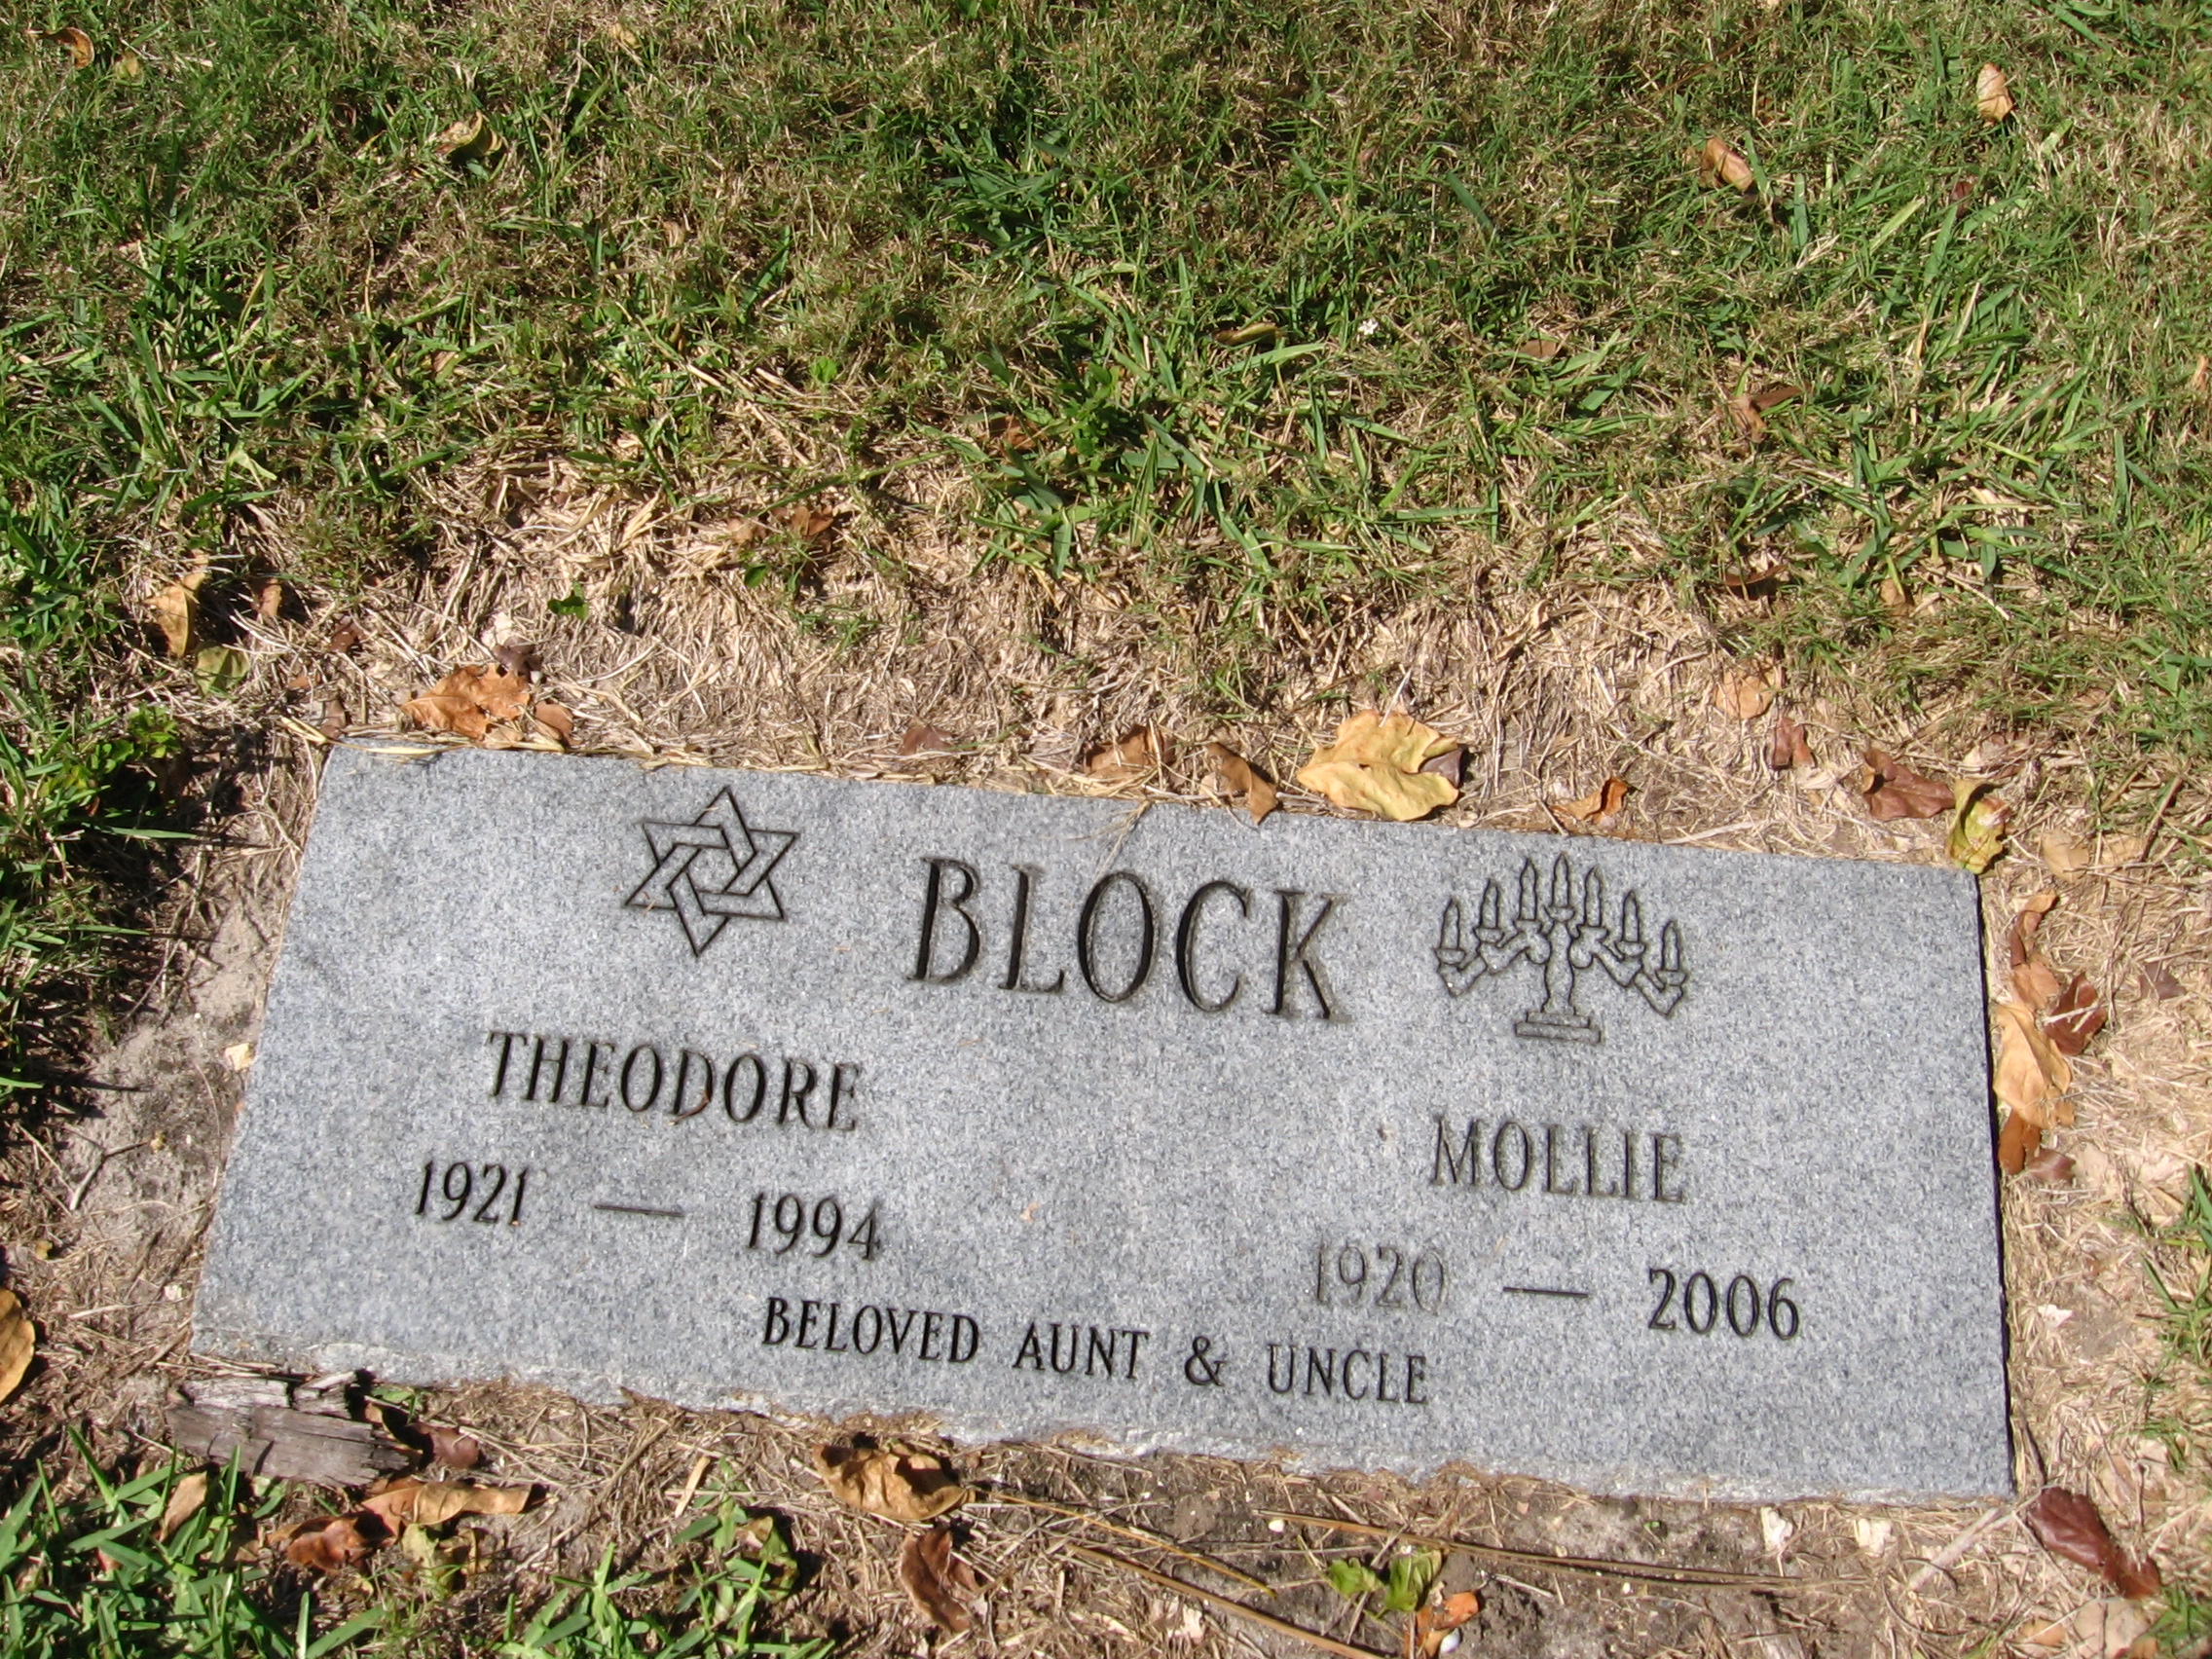 Theodore Block